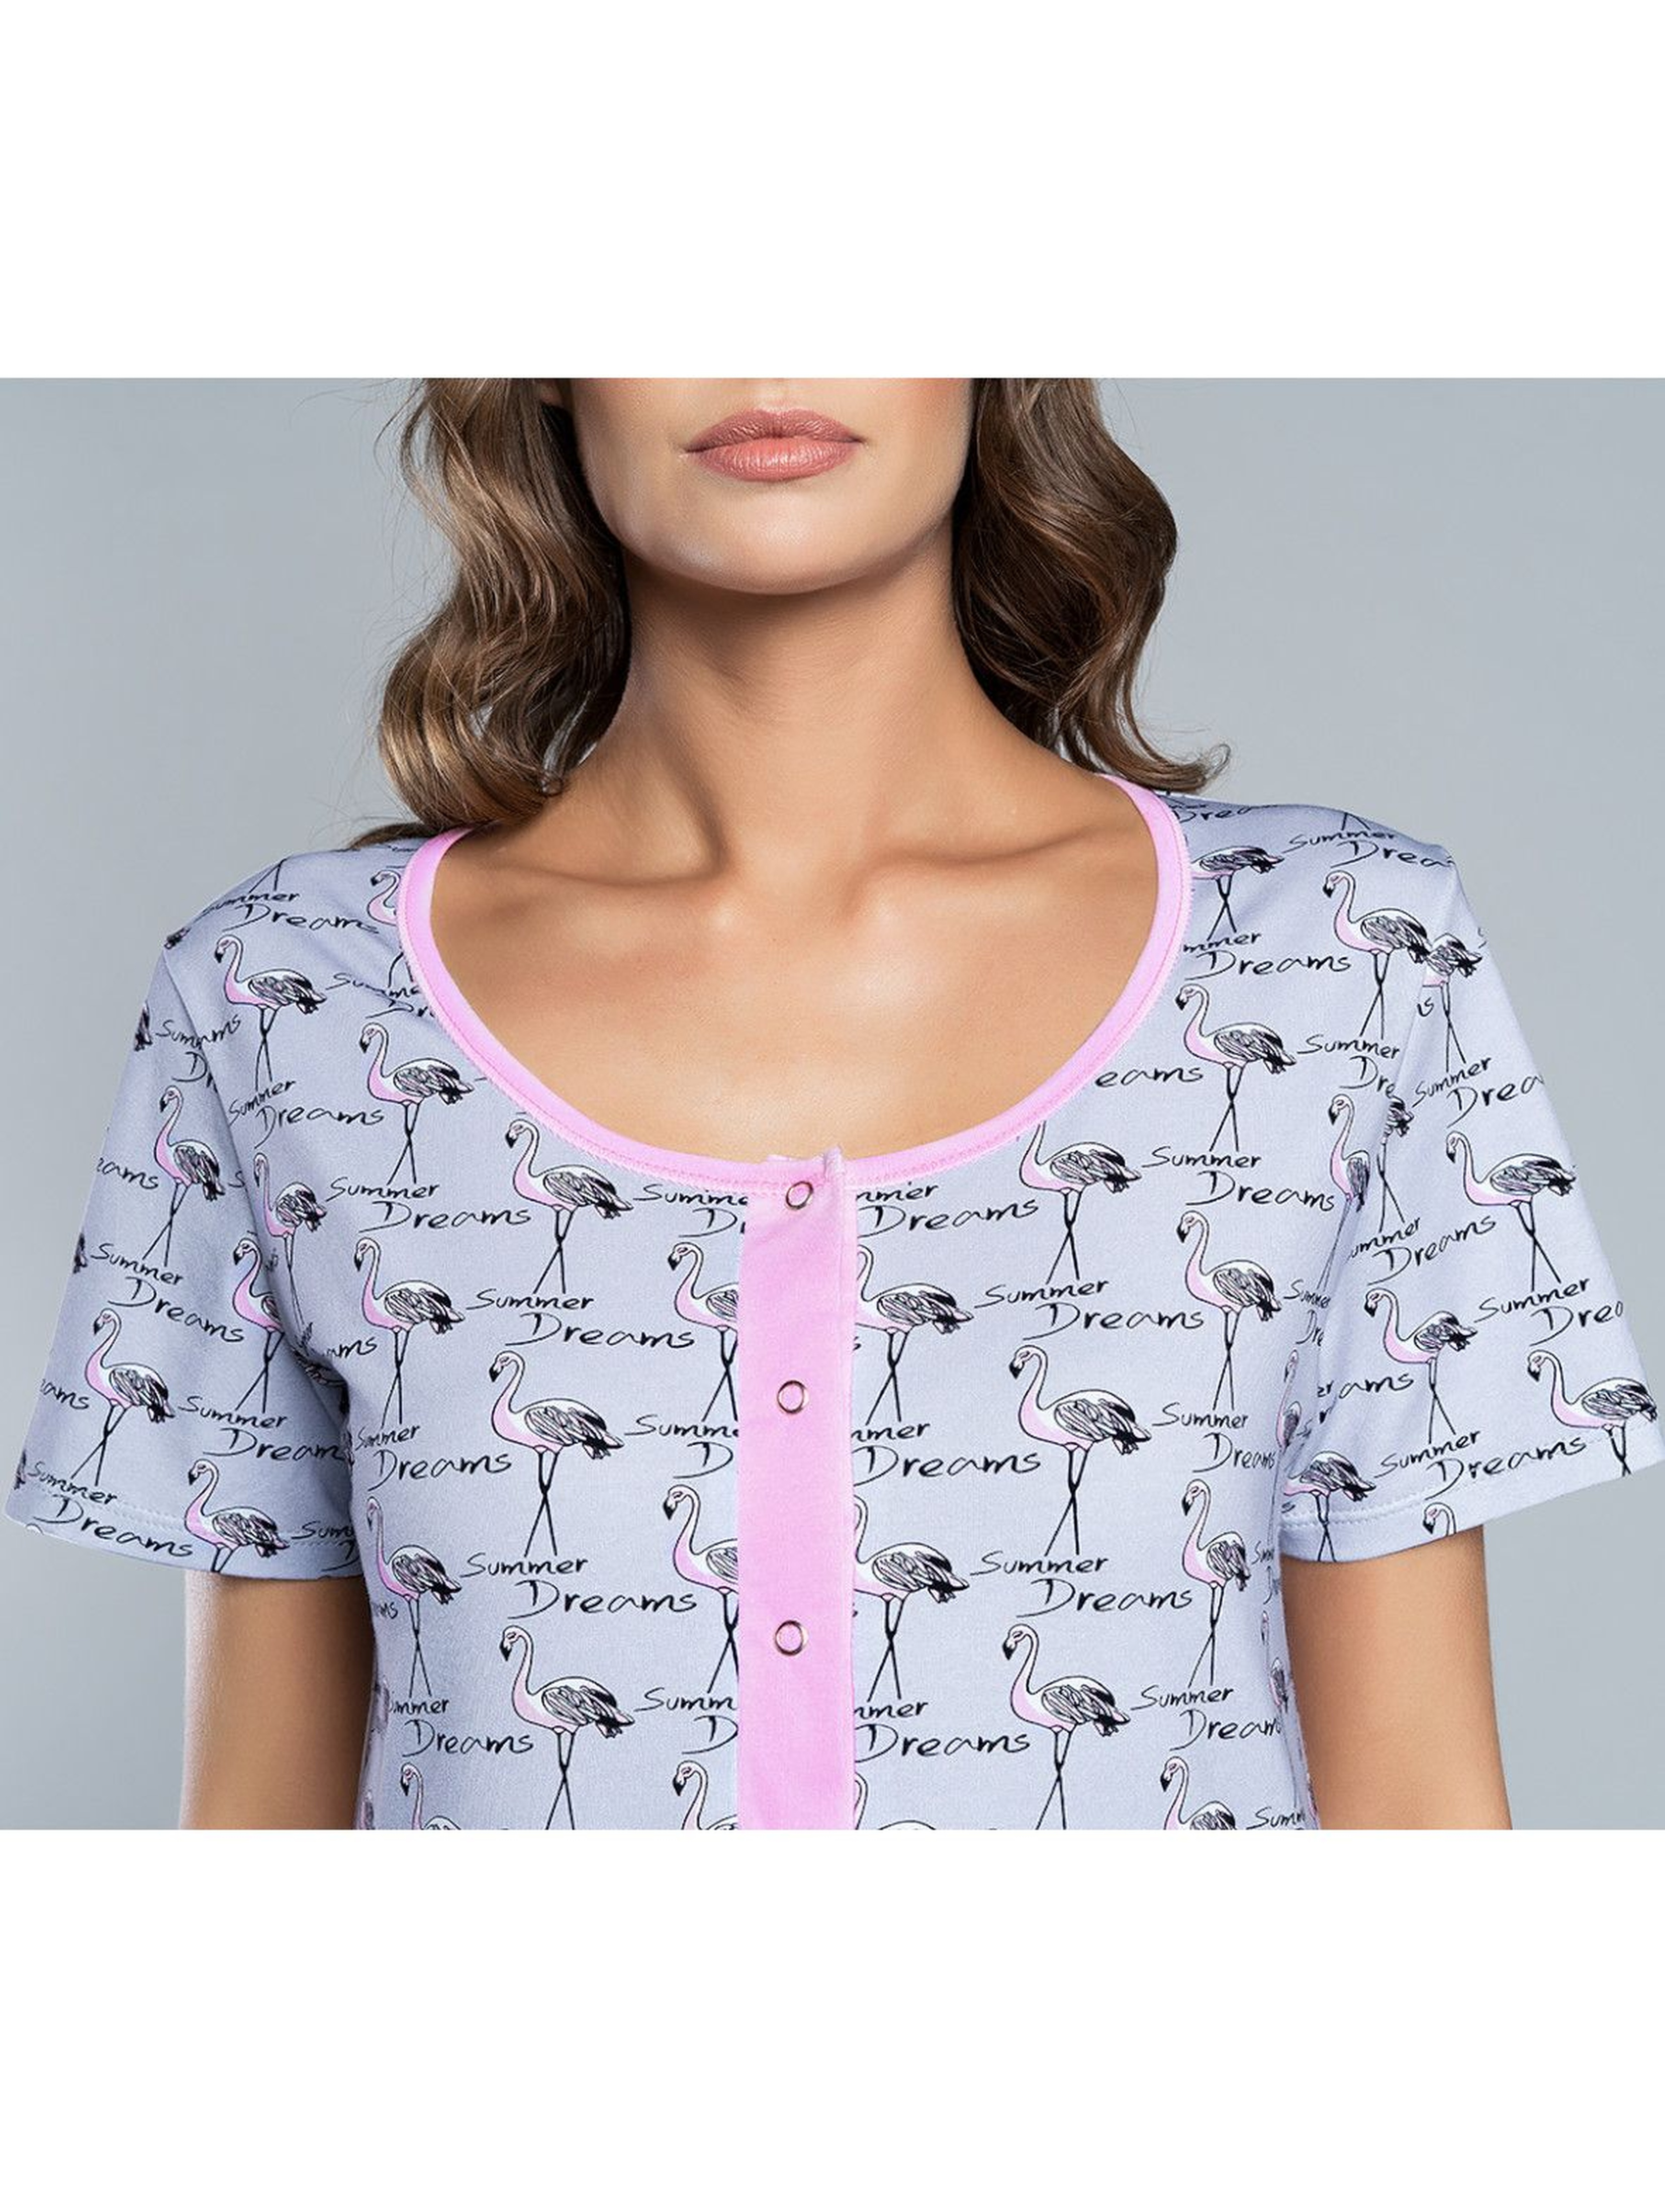 Koszula nocna damska z flamingami na krótki rękaw - Model przystosowany dla Matek karmiących